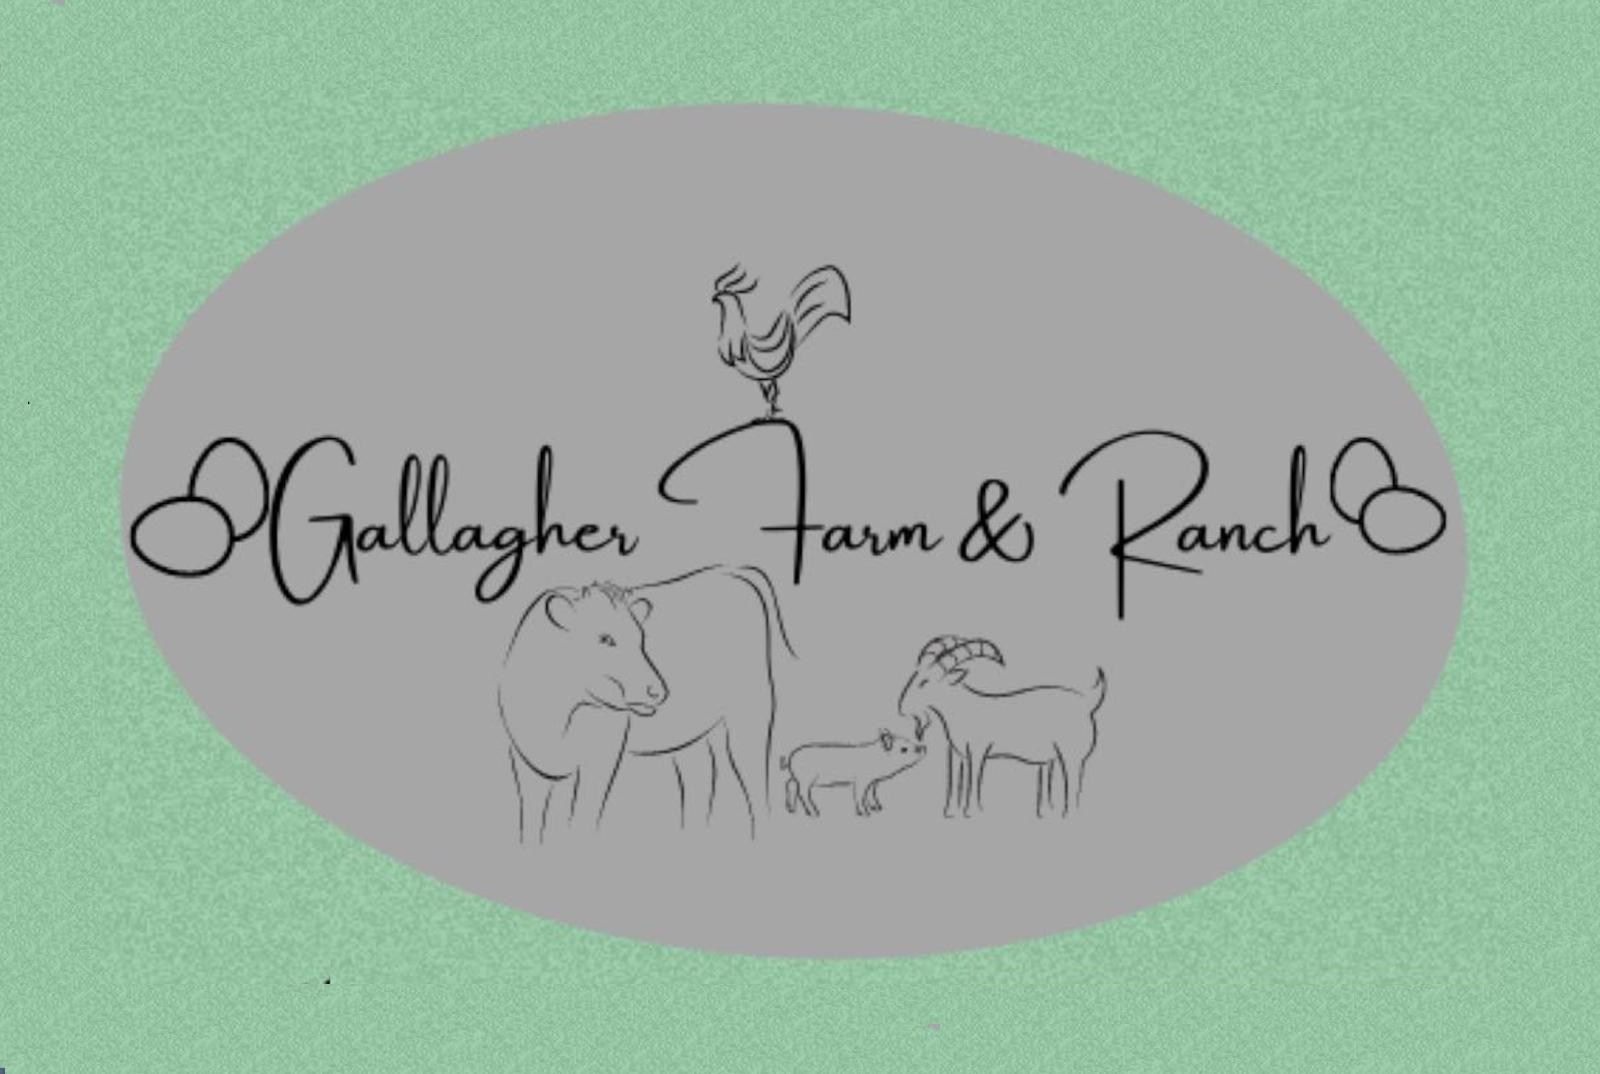 Gallagher Farm & Ranch